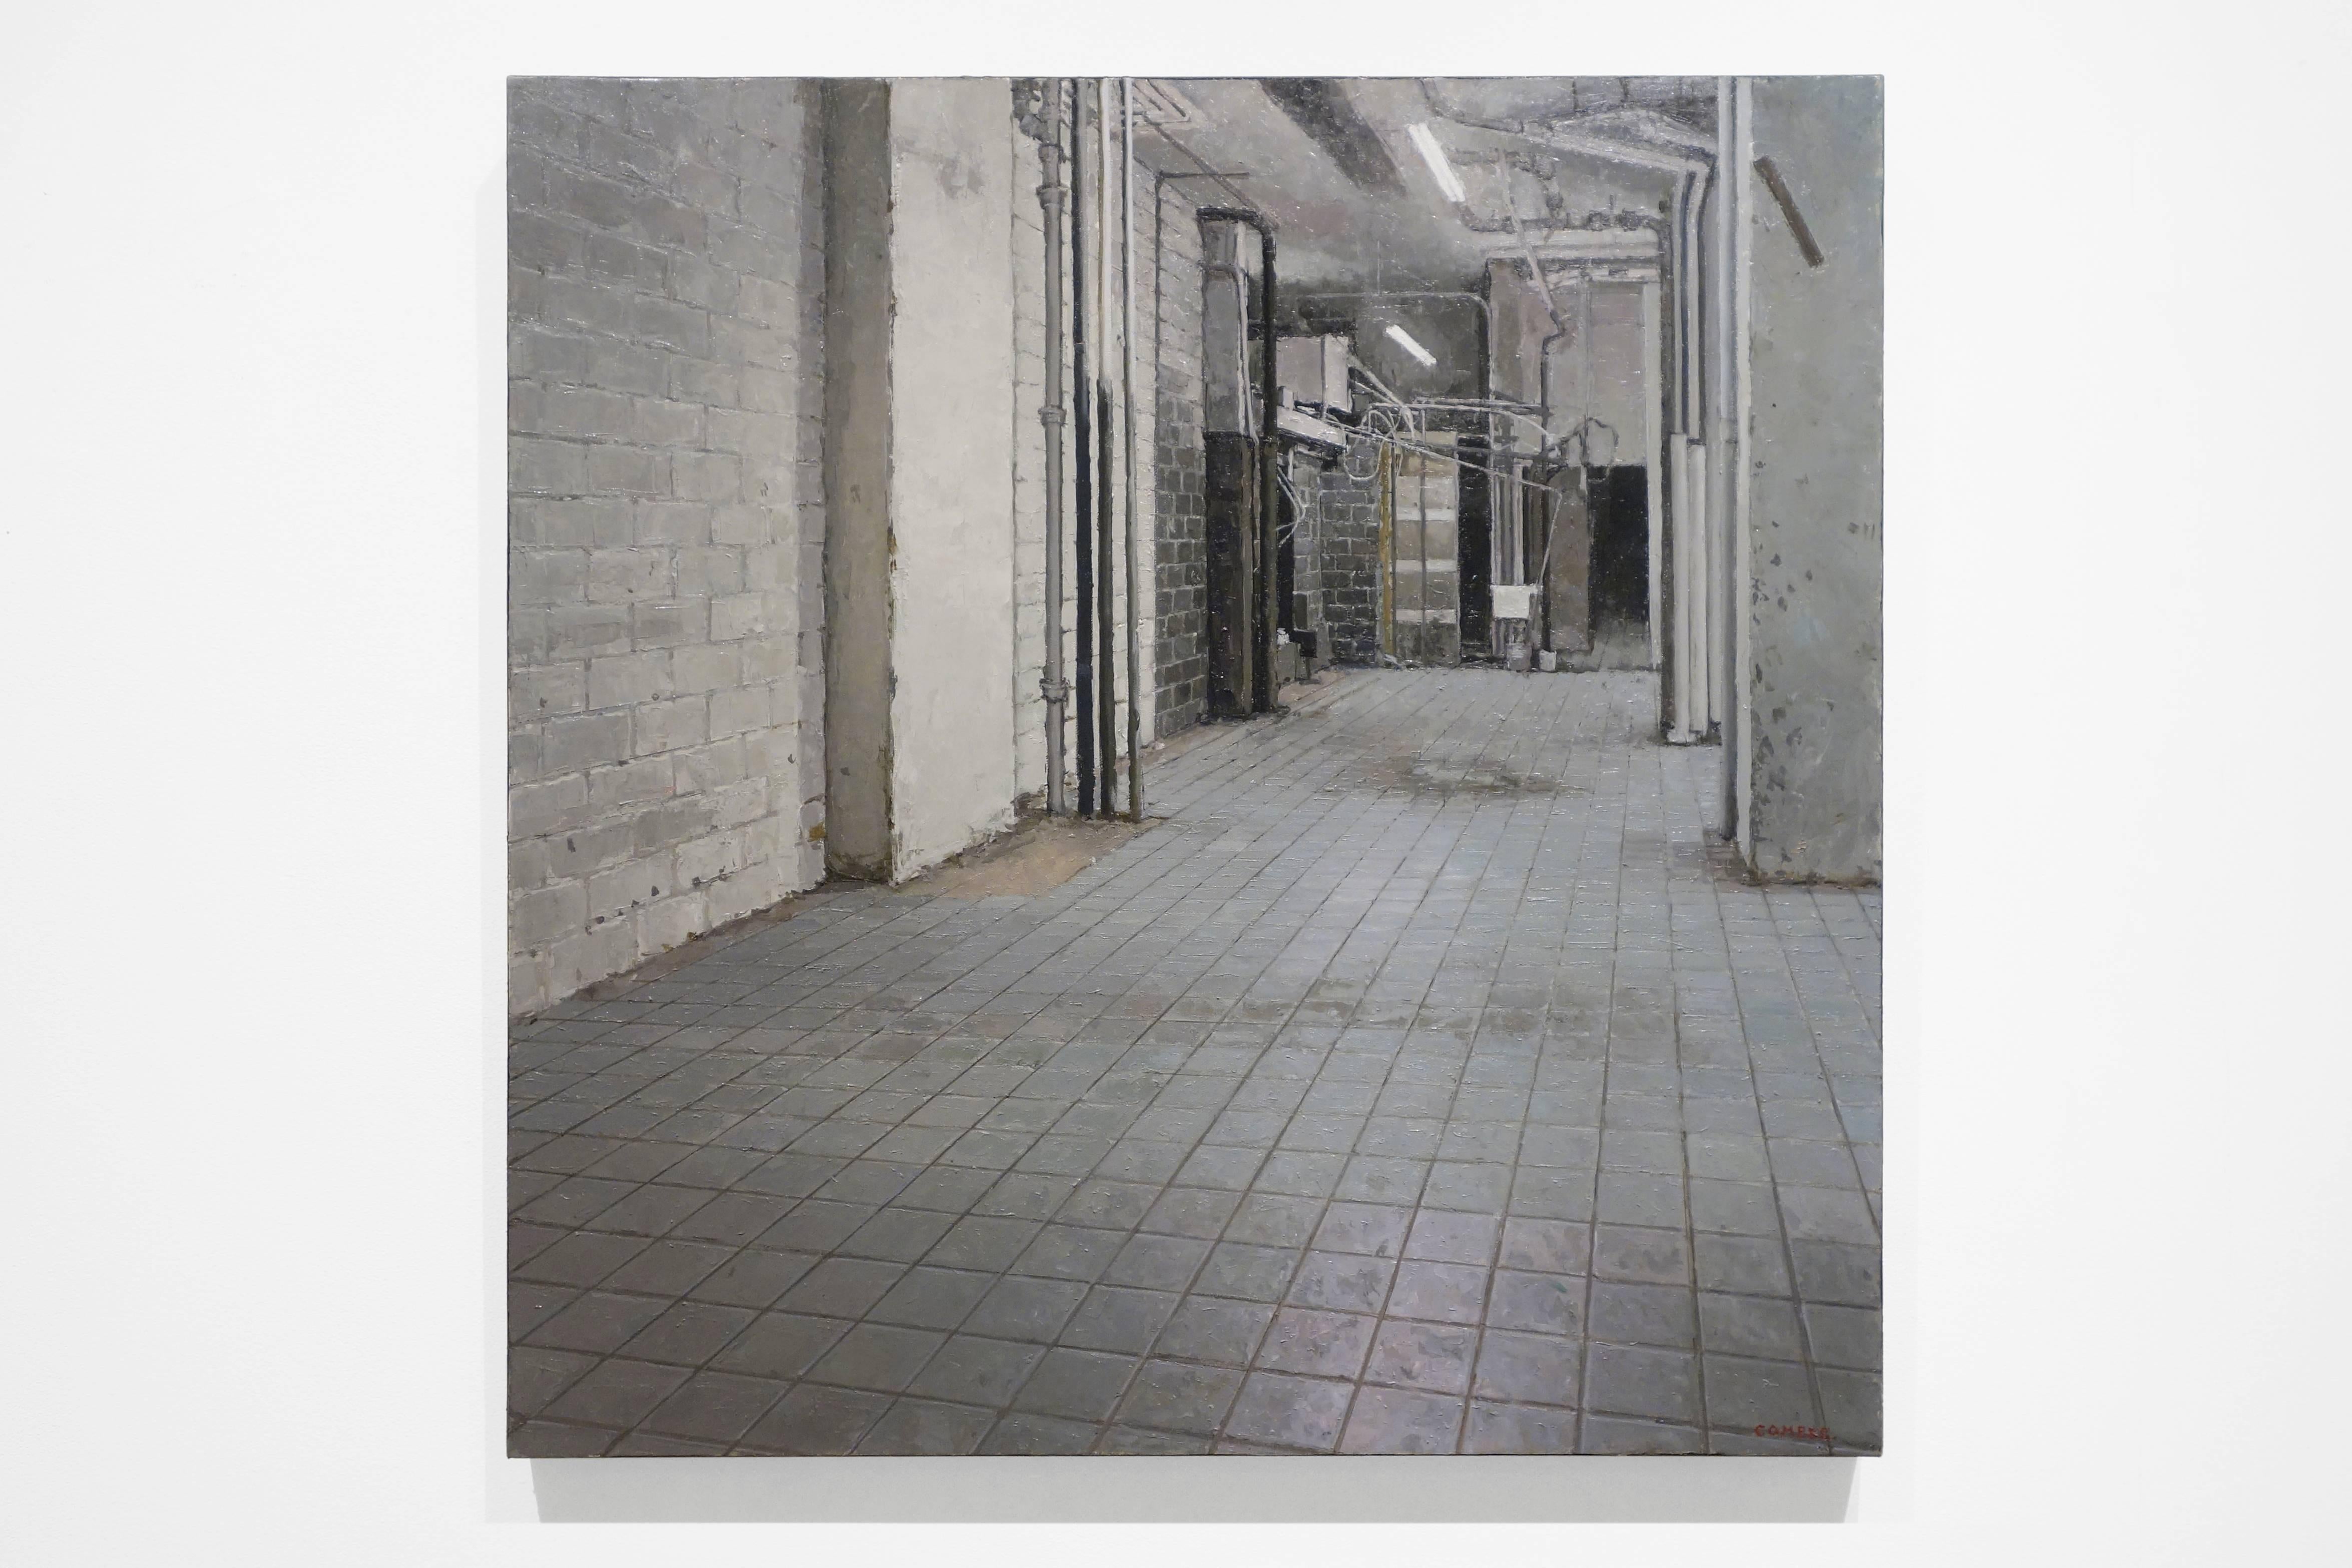 Interieur, Fotorealismus, leere Räume, graue Fliesen, weiße Wände, Gebäude – Painting von Richard Combes